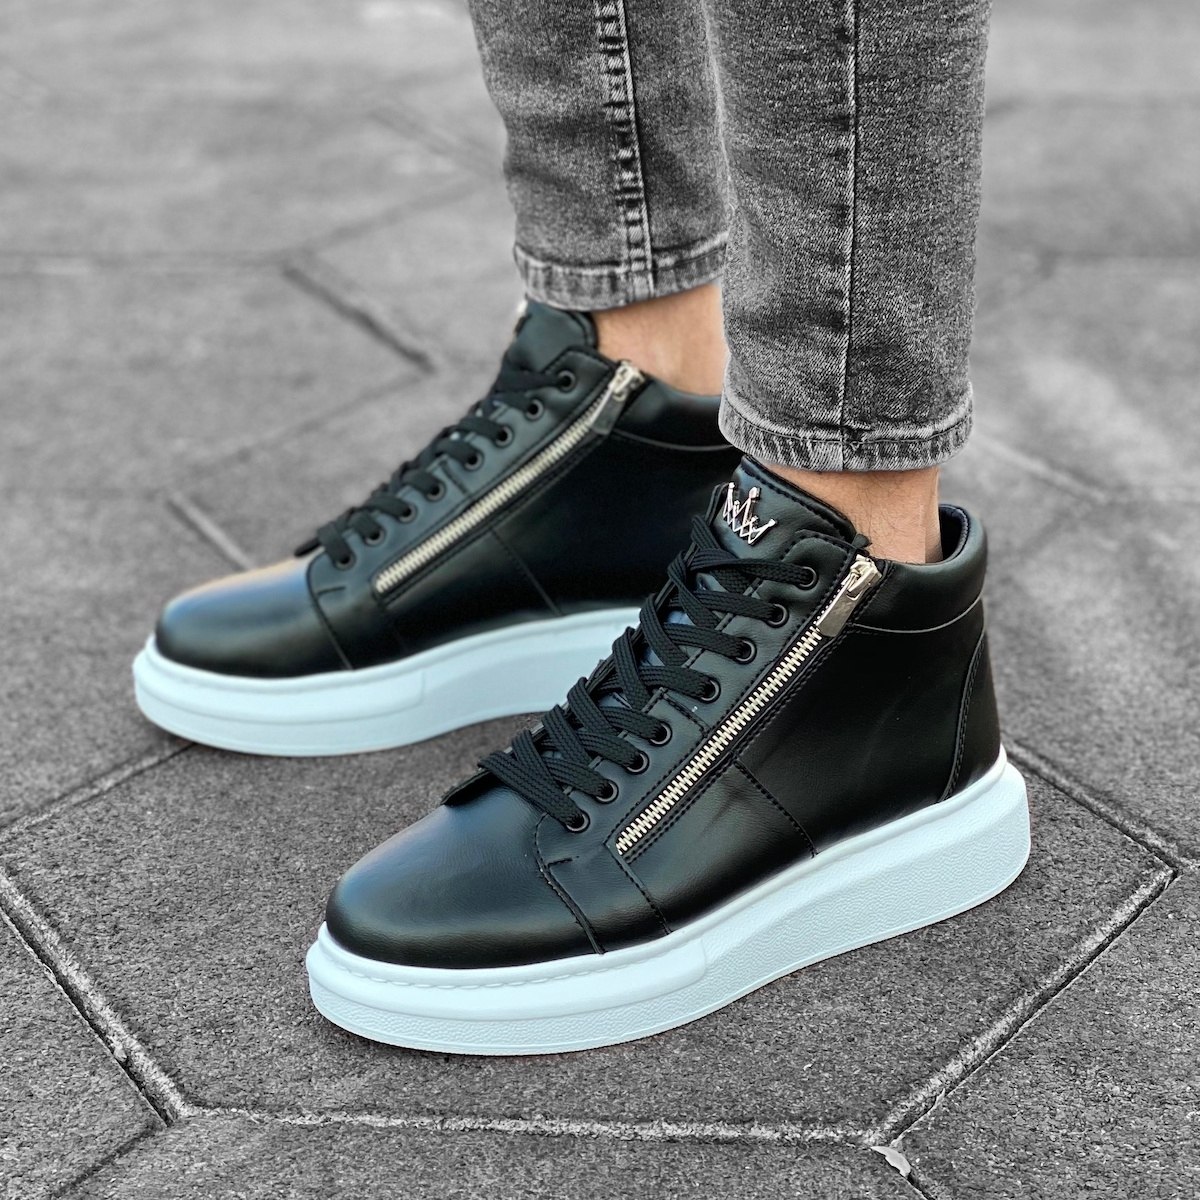 Herren High Top Sneakers Designer Schuhe mit Reissverschluss in schwarz-weiss - 3